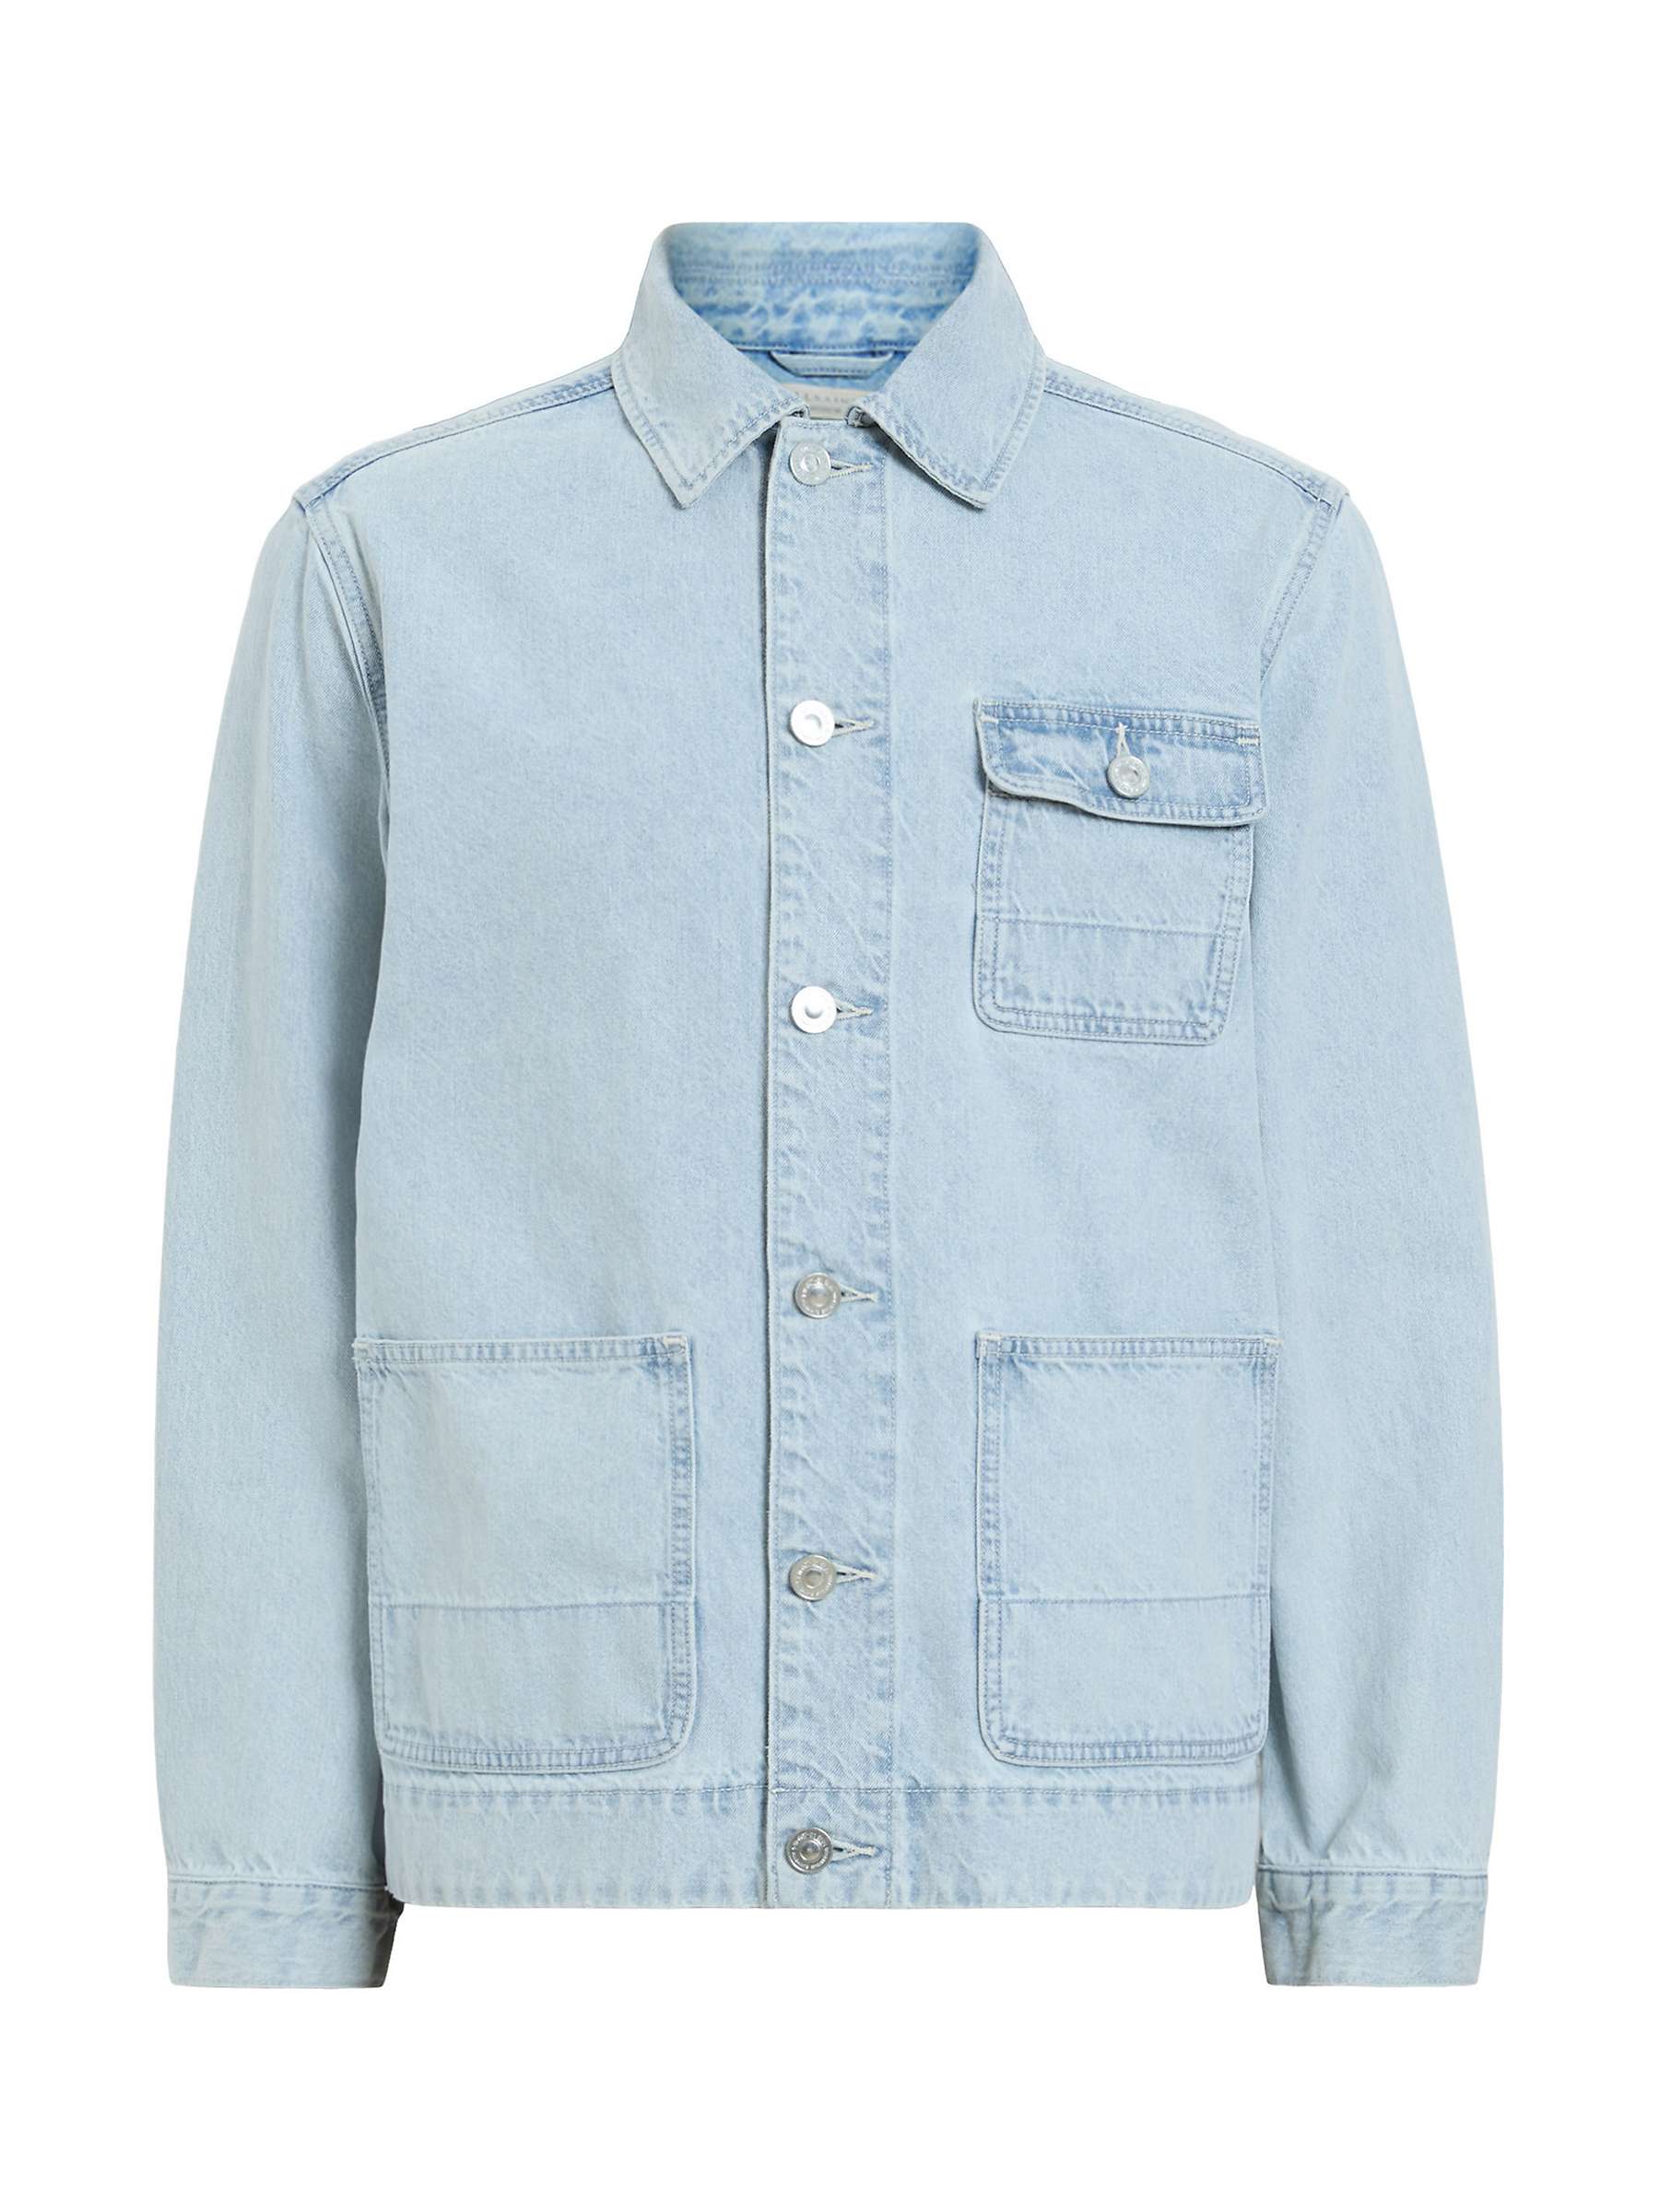 Buy AllSaints Eavis Jacket, Indigo Blue Online at johnlewis.com